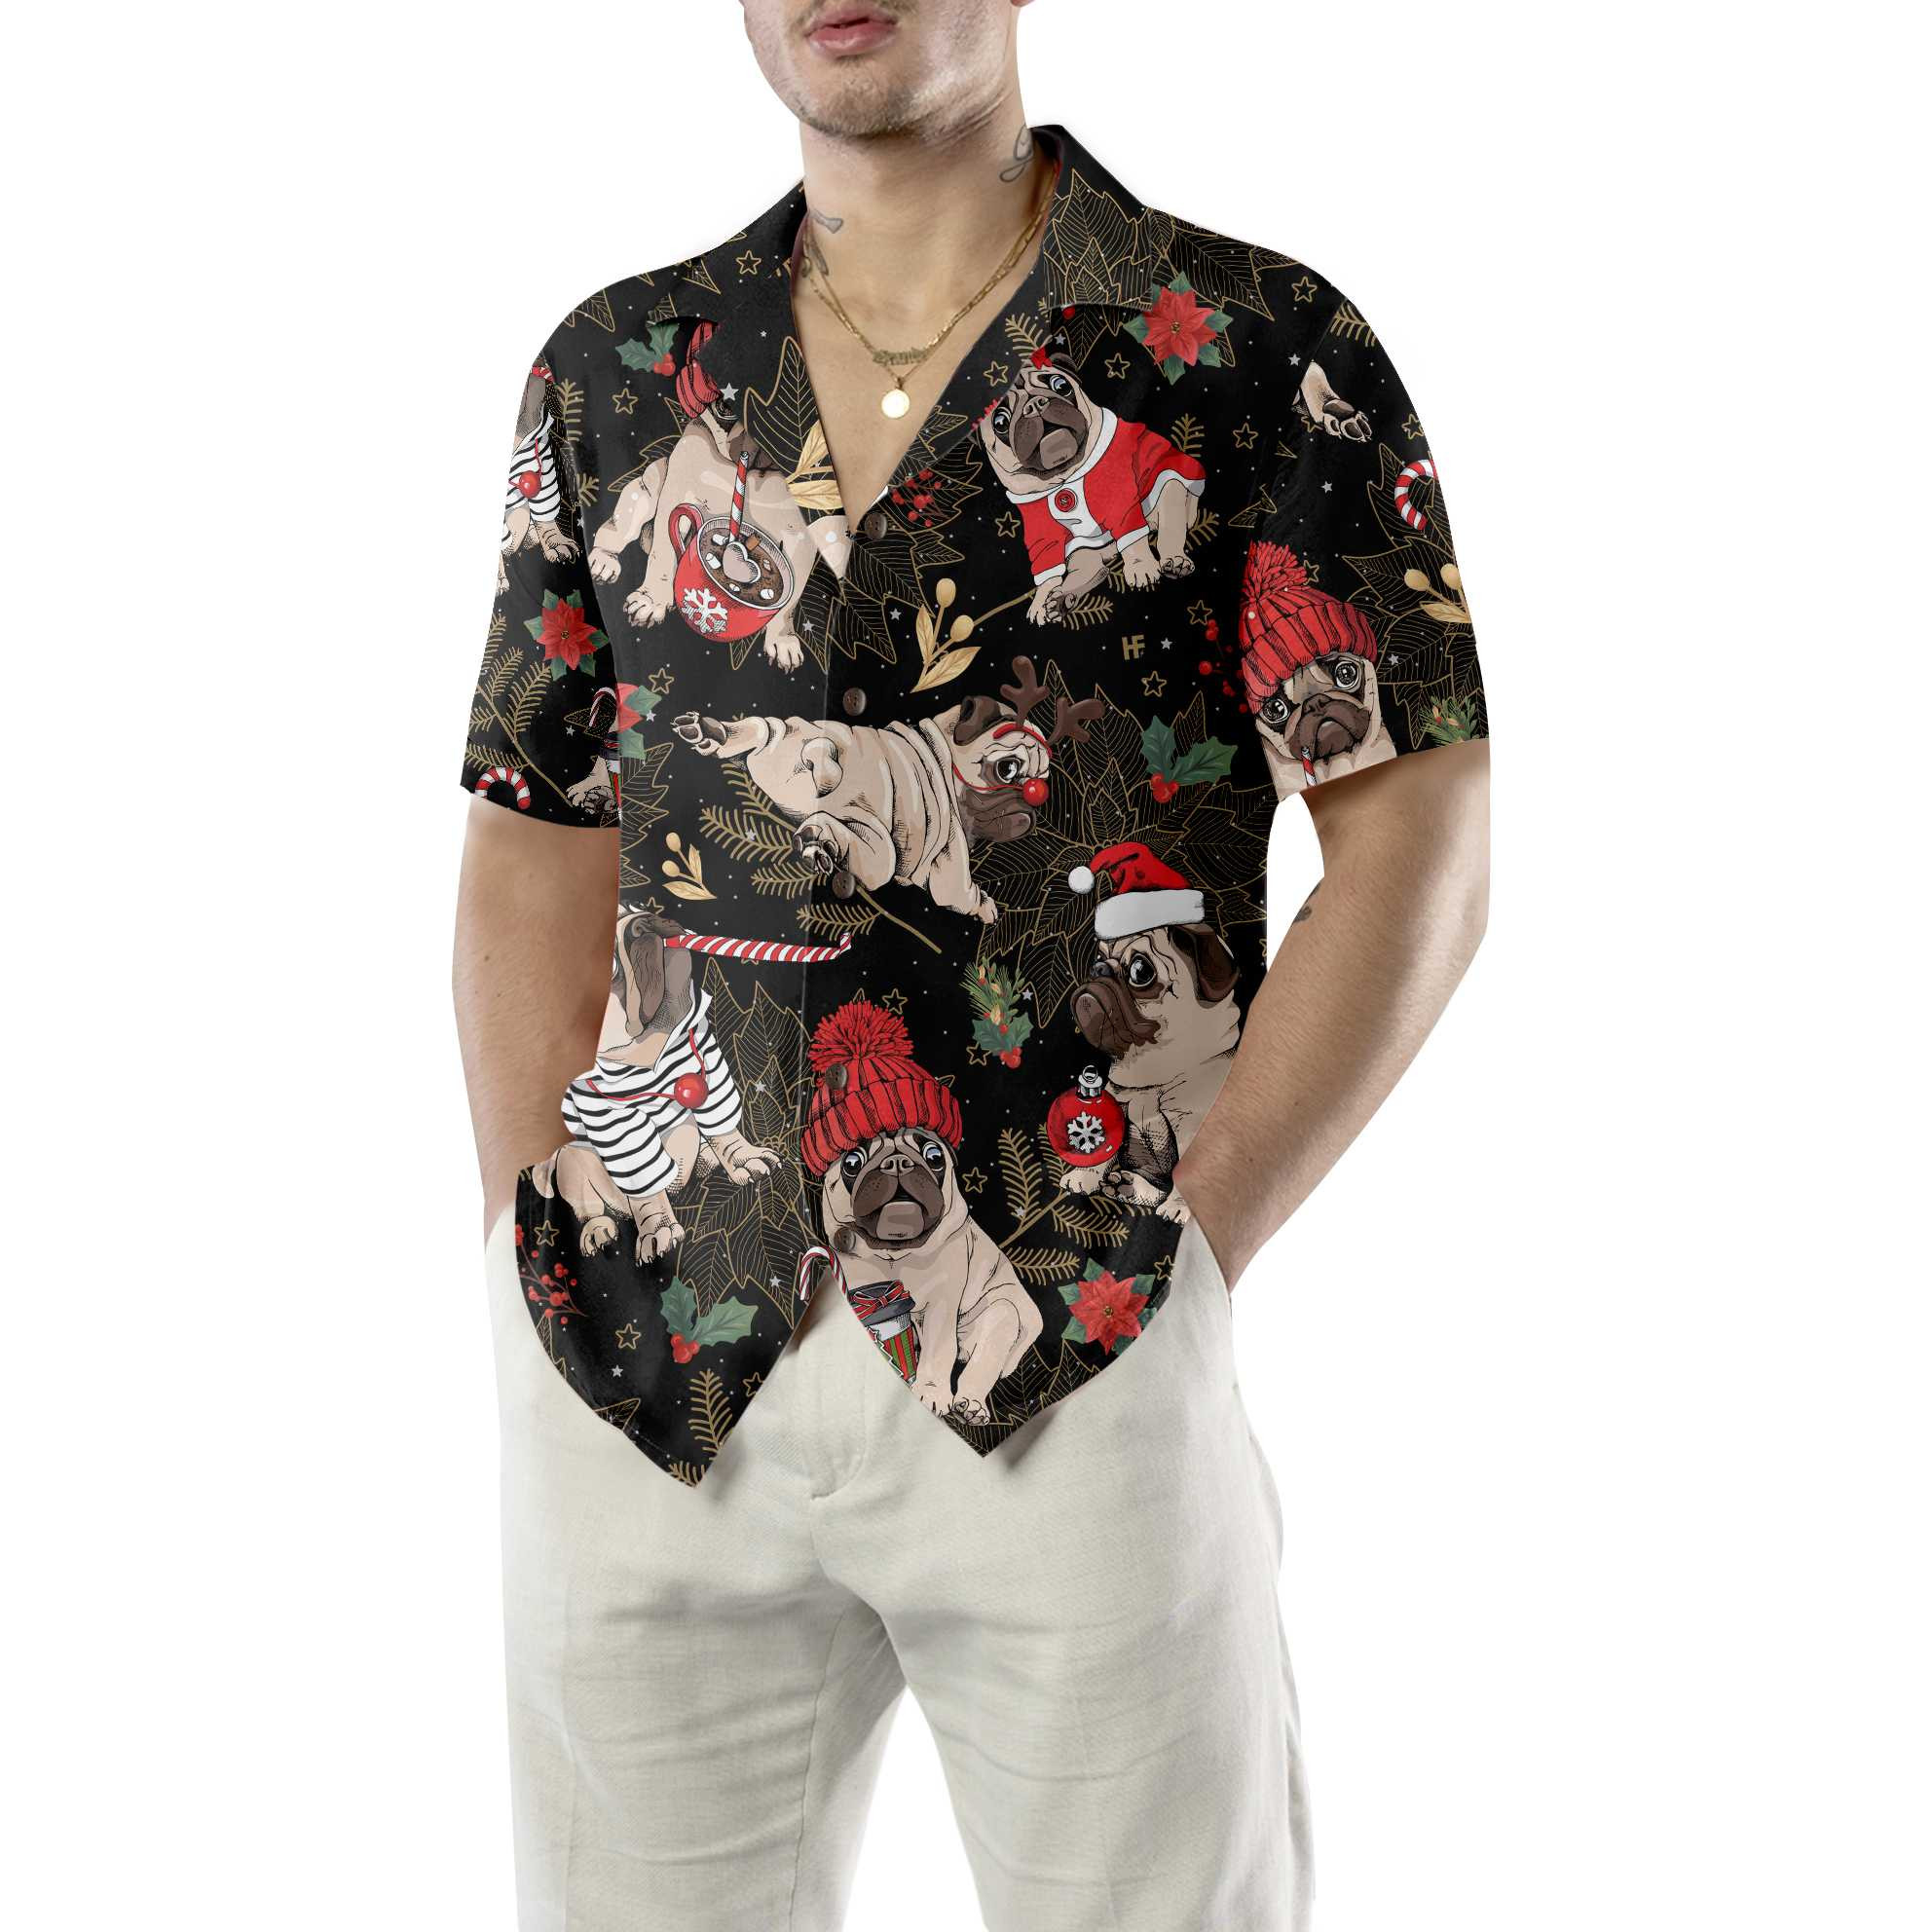 Merry Pug Party Hawaiian Shirt, Funny Christmas Pug Dog Shirt For Men